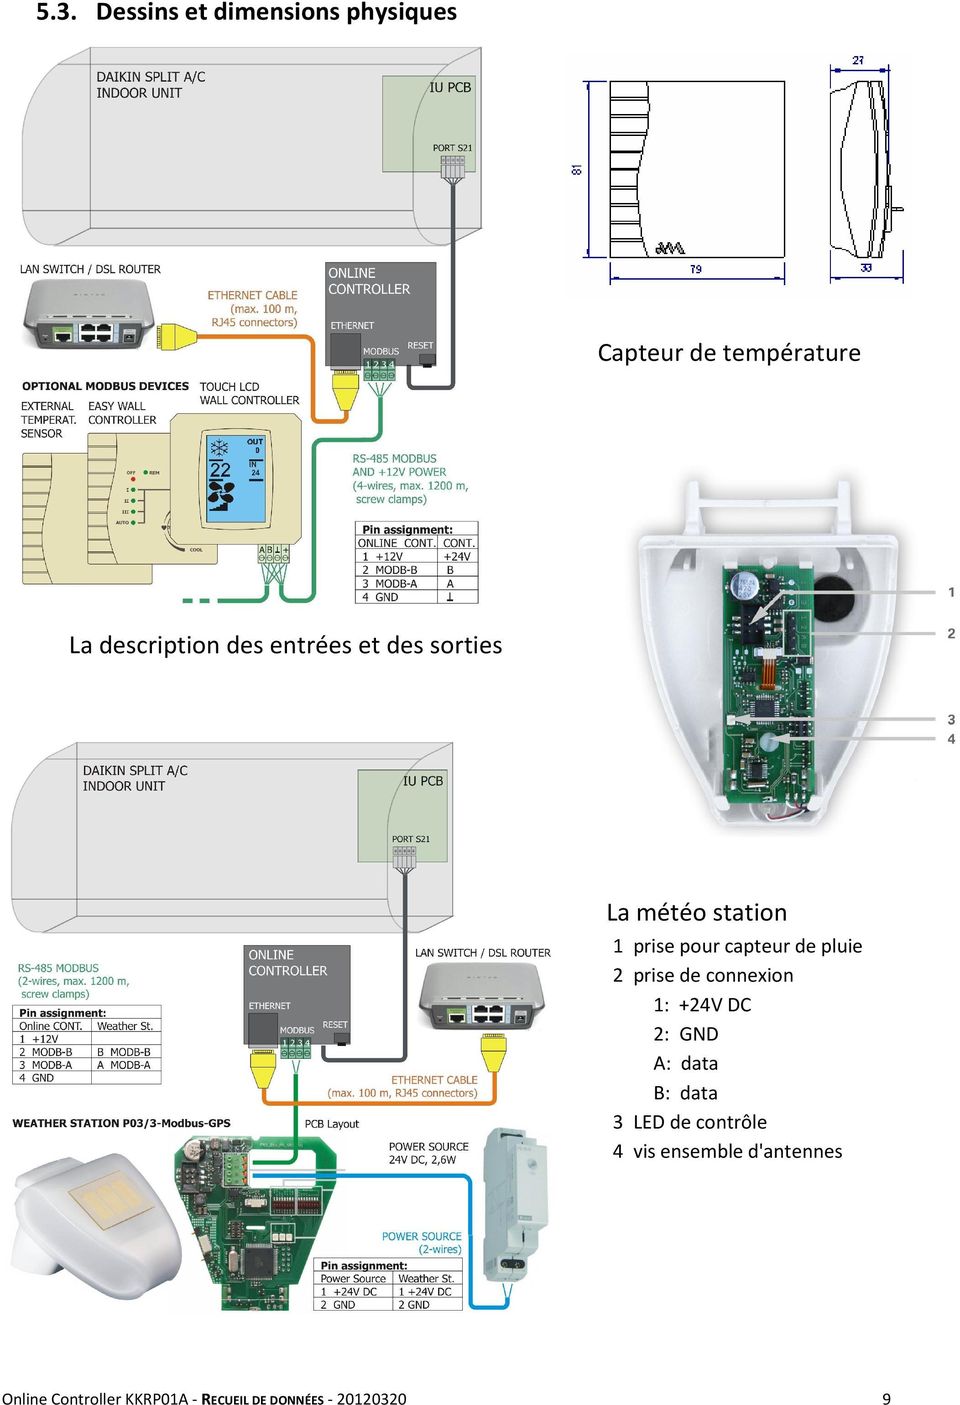 prise de connexion 1: +24V DC 2: GND A: data B: data 3 LED de contrôle 4 vis